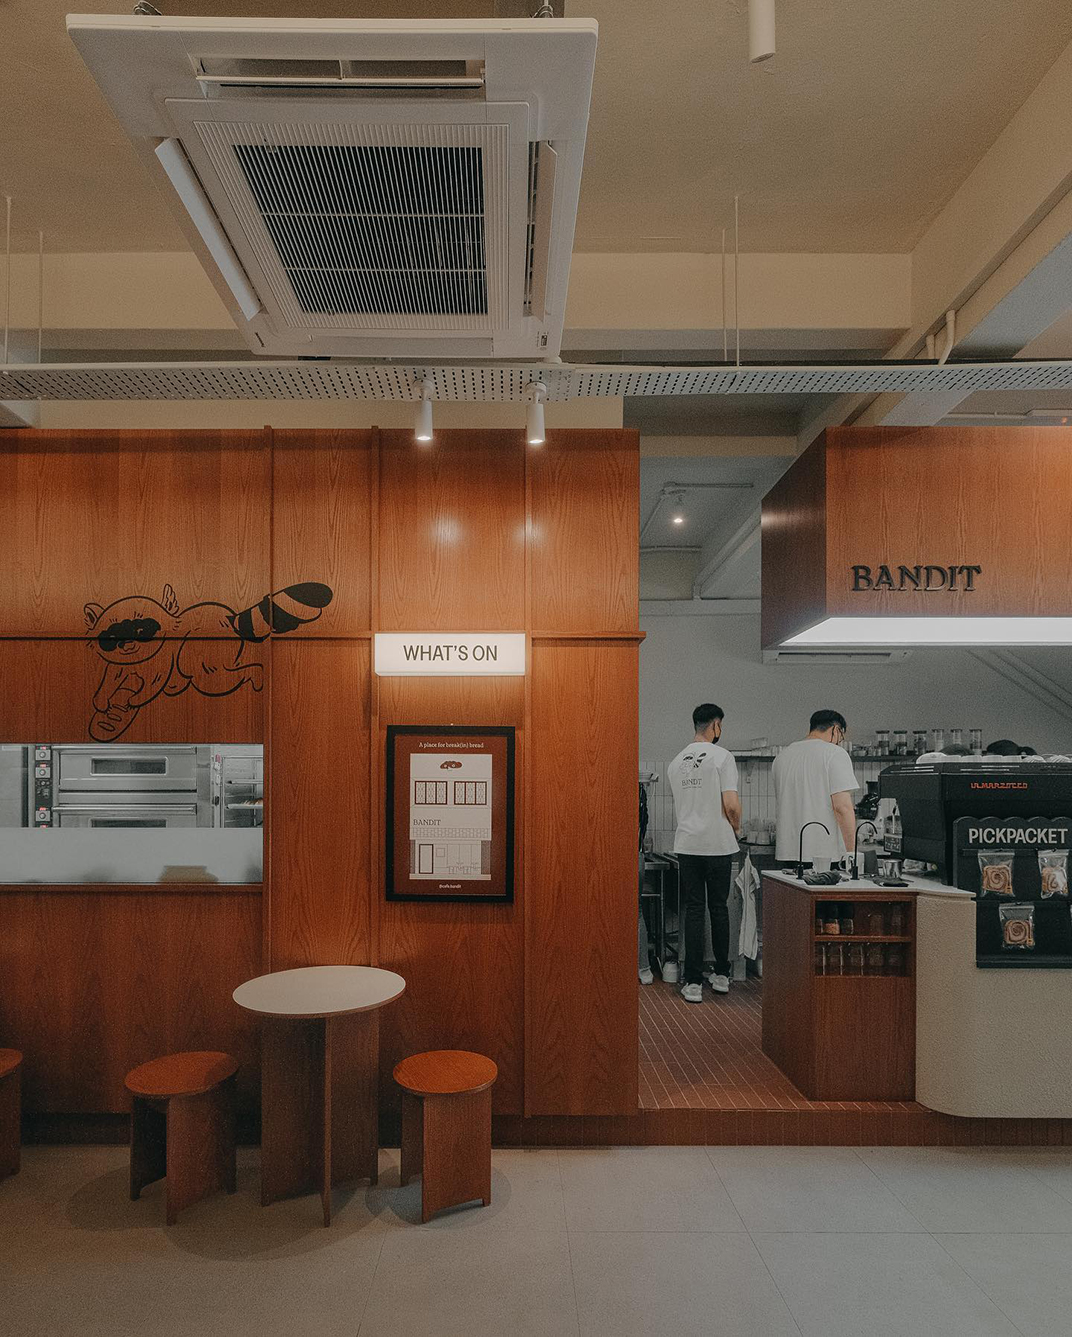 面包店咖啡馆Bandit, 马来西亚 吉隆坡 咖啡馆 面包店 插画设计 logo设计 vi设计 空间设计